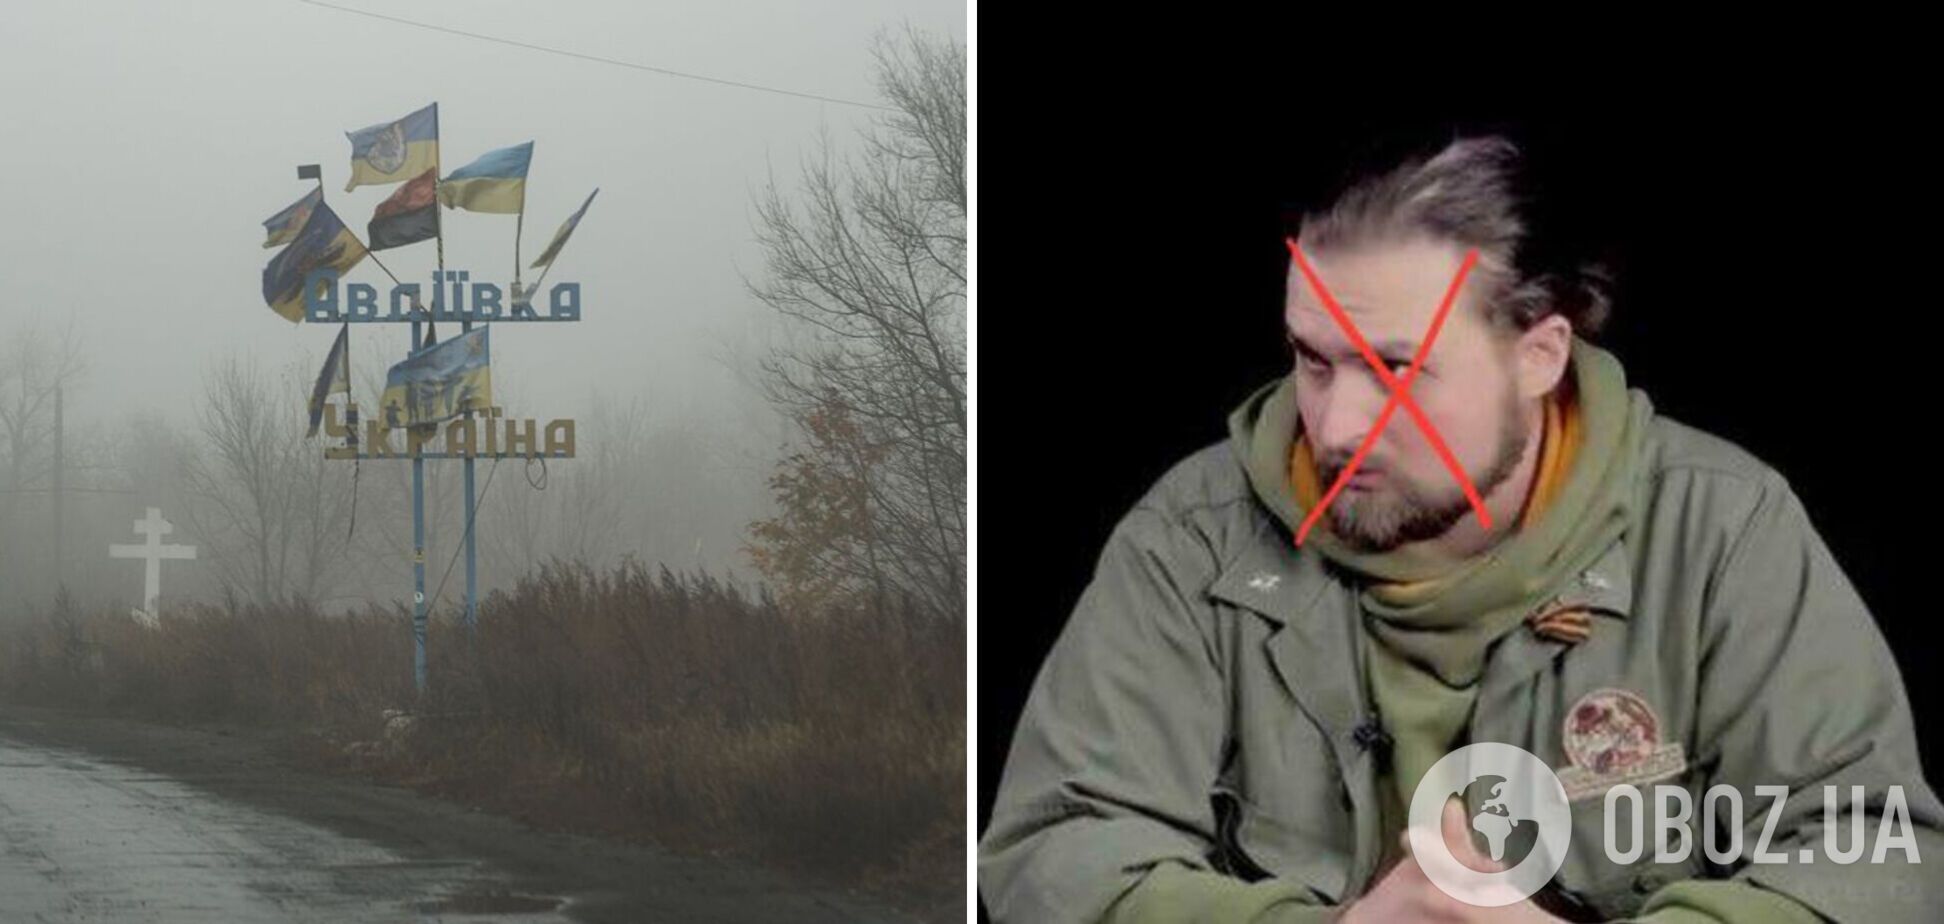 Російський пропагандист, який заявив про втрати Росією 16 тис. солдат у боях за Авдіївку, застрелився 